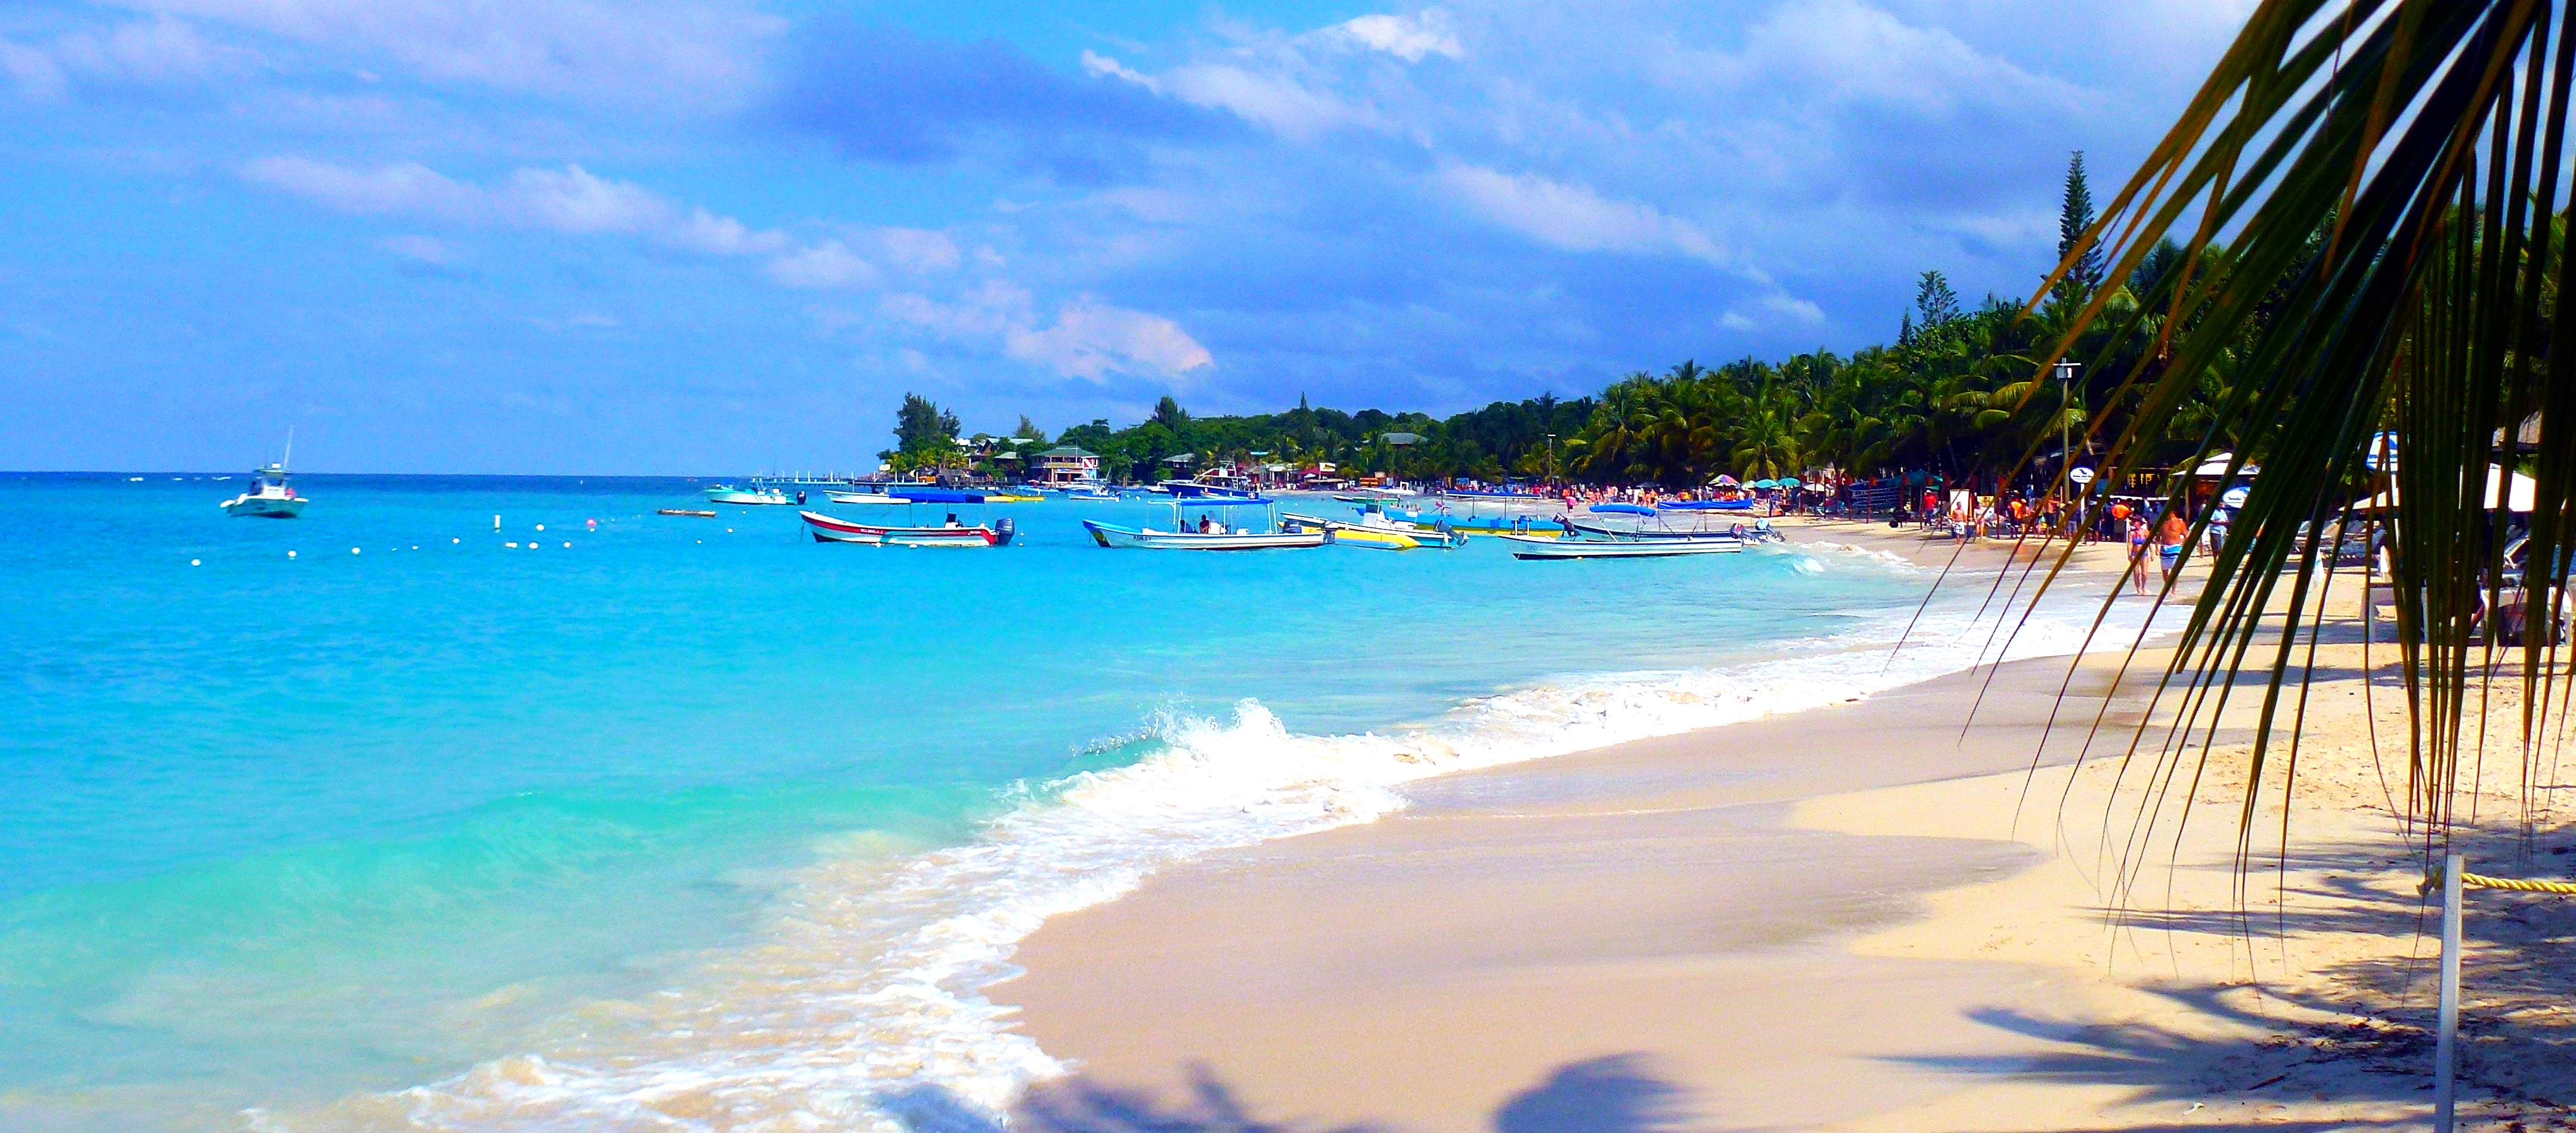 Honduras – Perfect Beaches and Maya Ruins